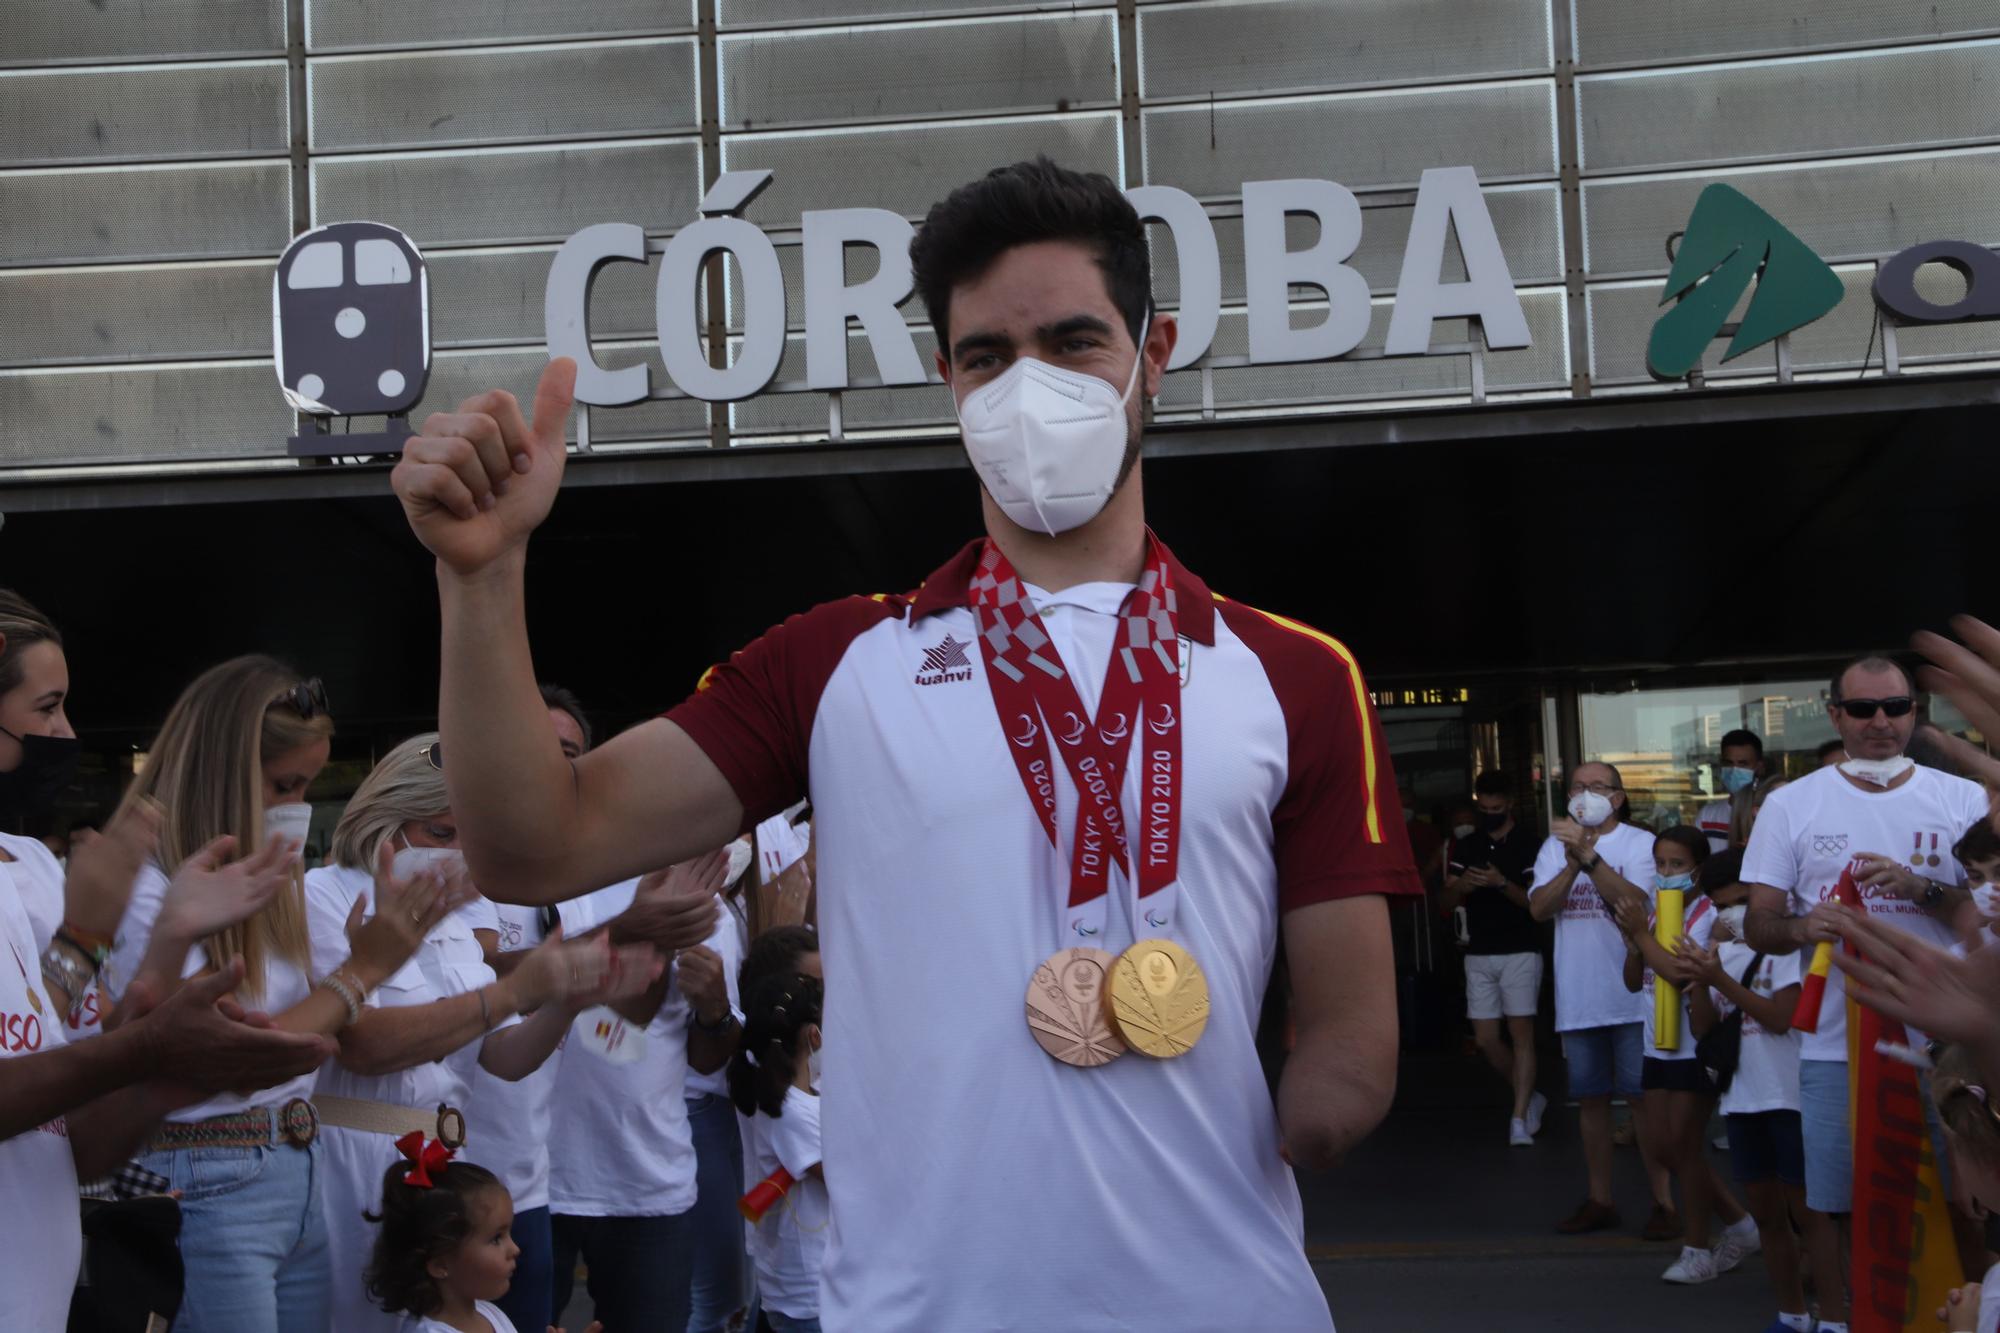 Gran recibiemiento al campeón paralímpico, Alfonso Cabello, a su llegada a Córdoba